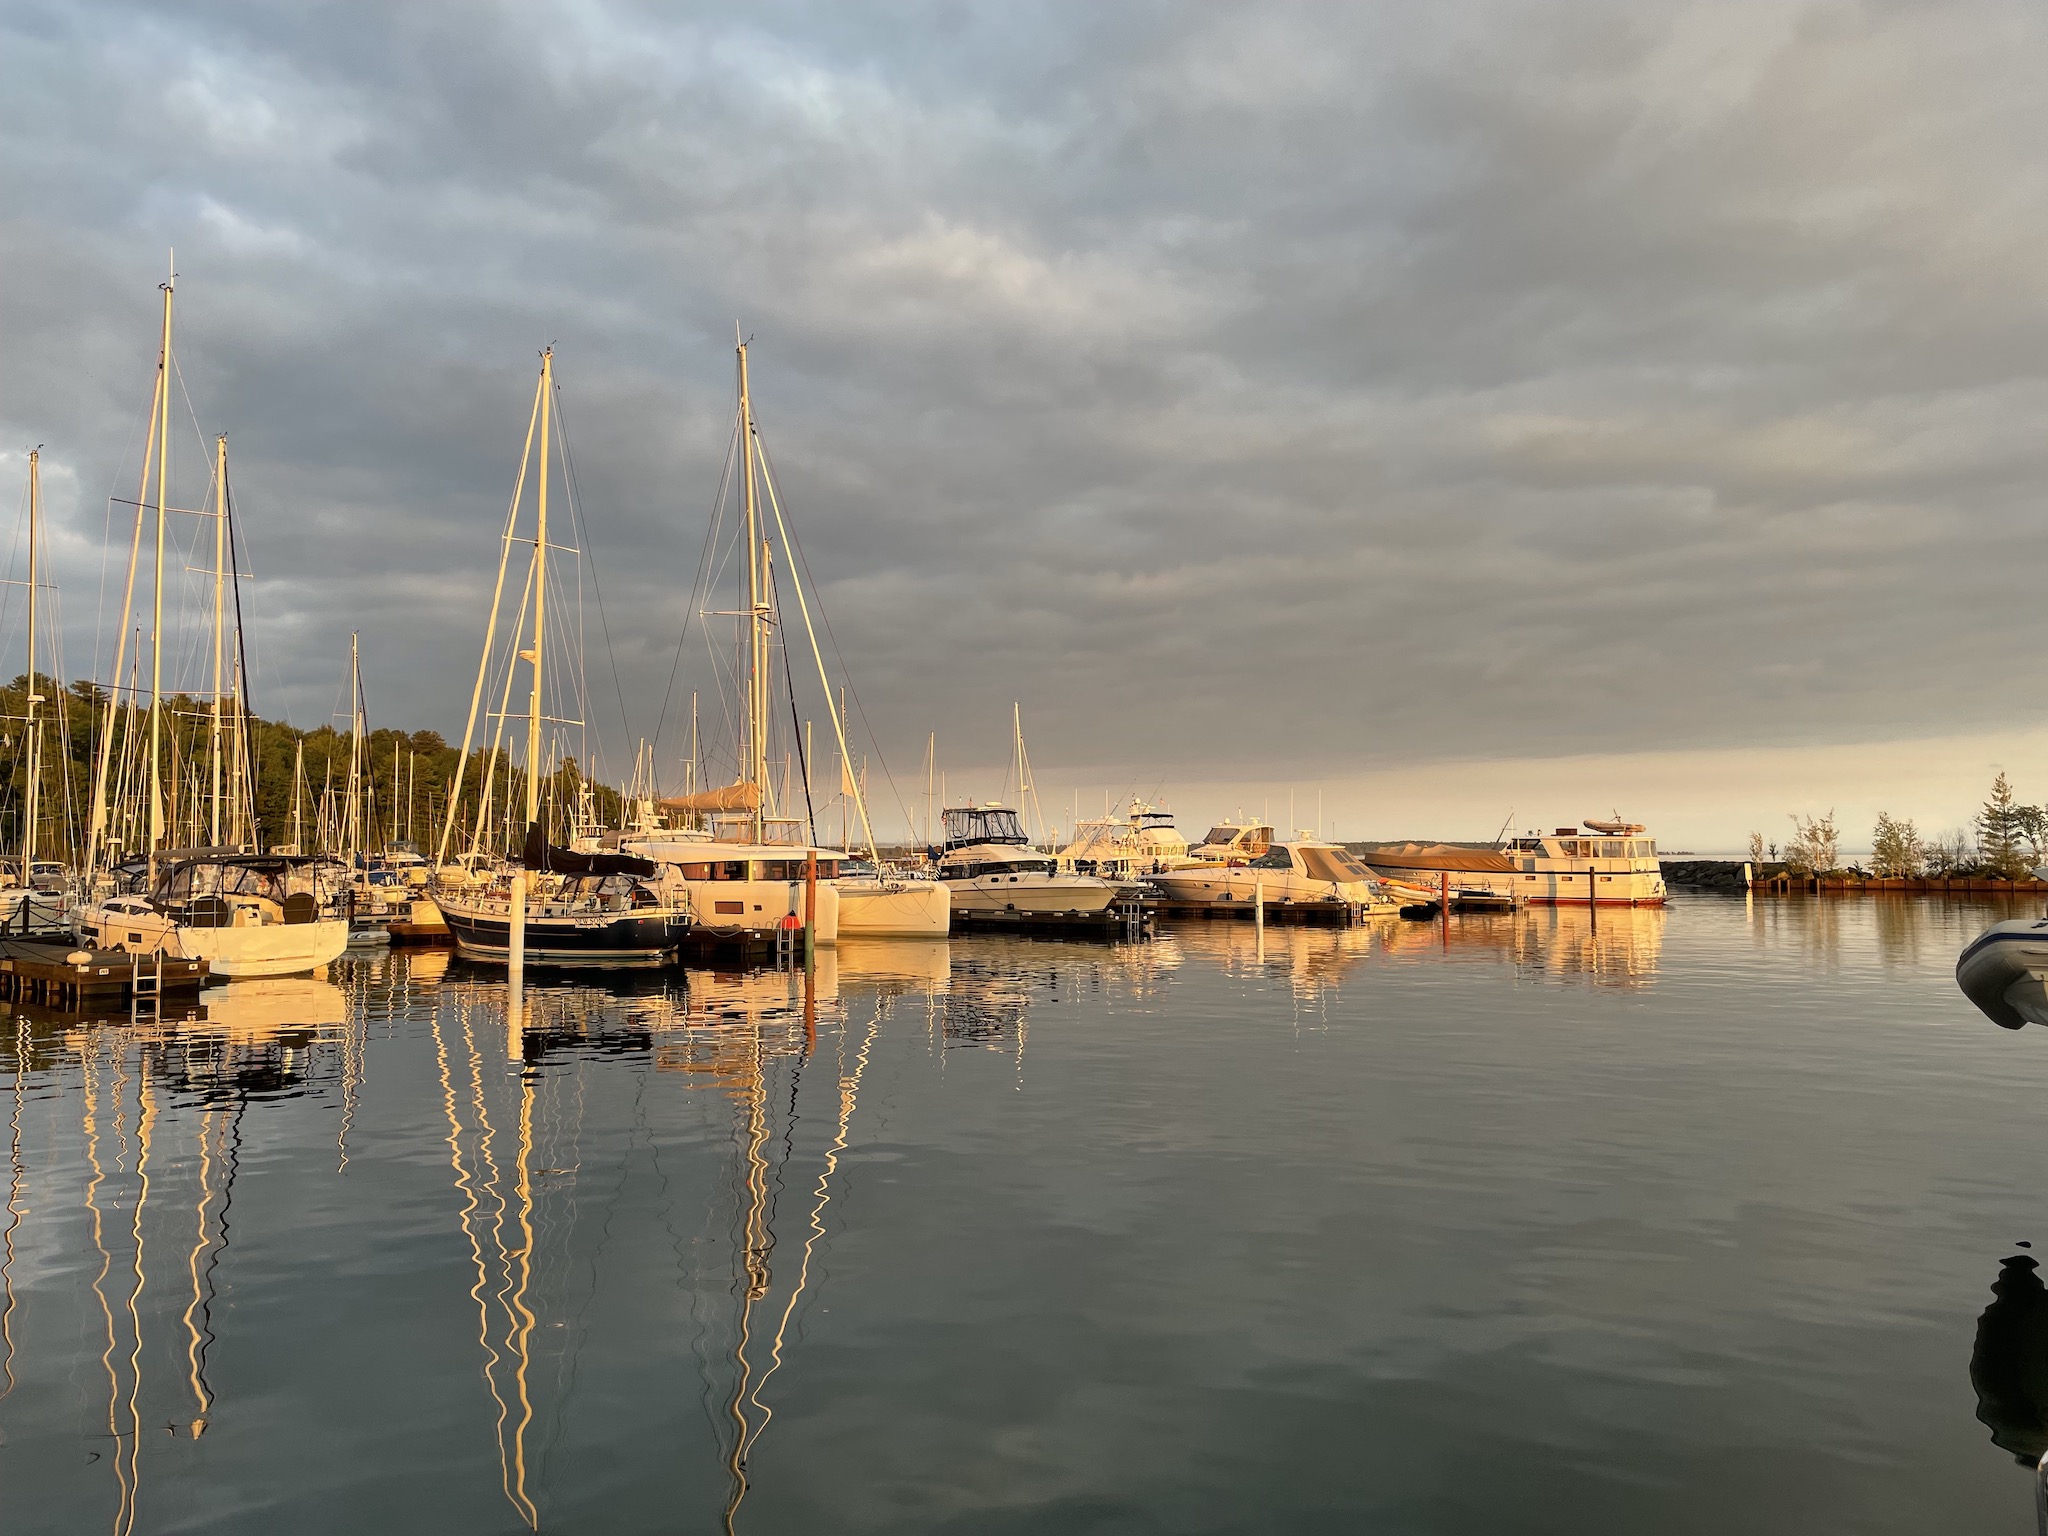 Sunrise over boats at Pikes Bay Marina